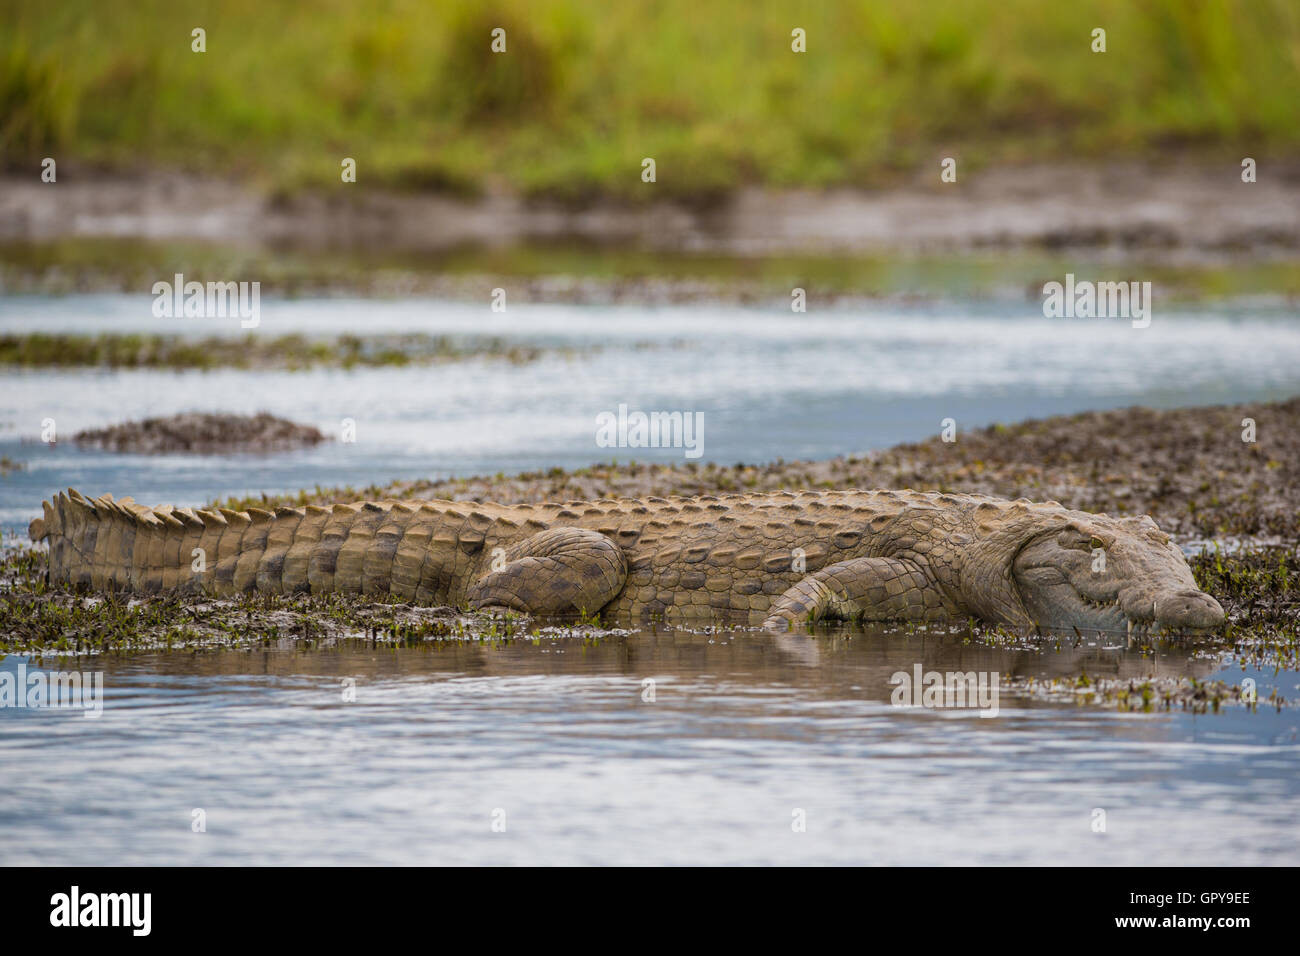 Vue latérale du crocodile du Nil pleine longueur allongée sur le bord de l'eau Banque D'Images